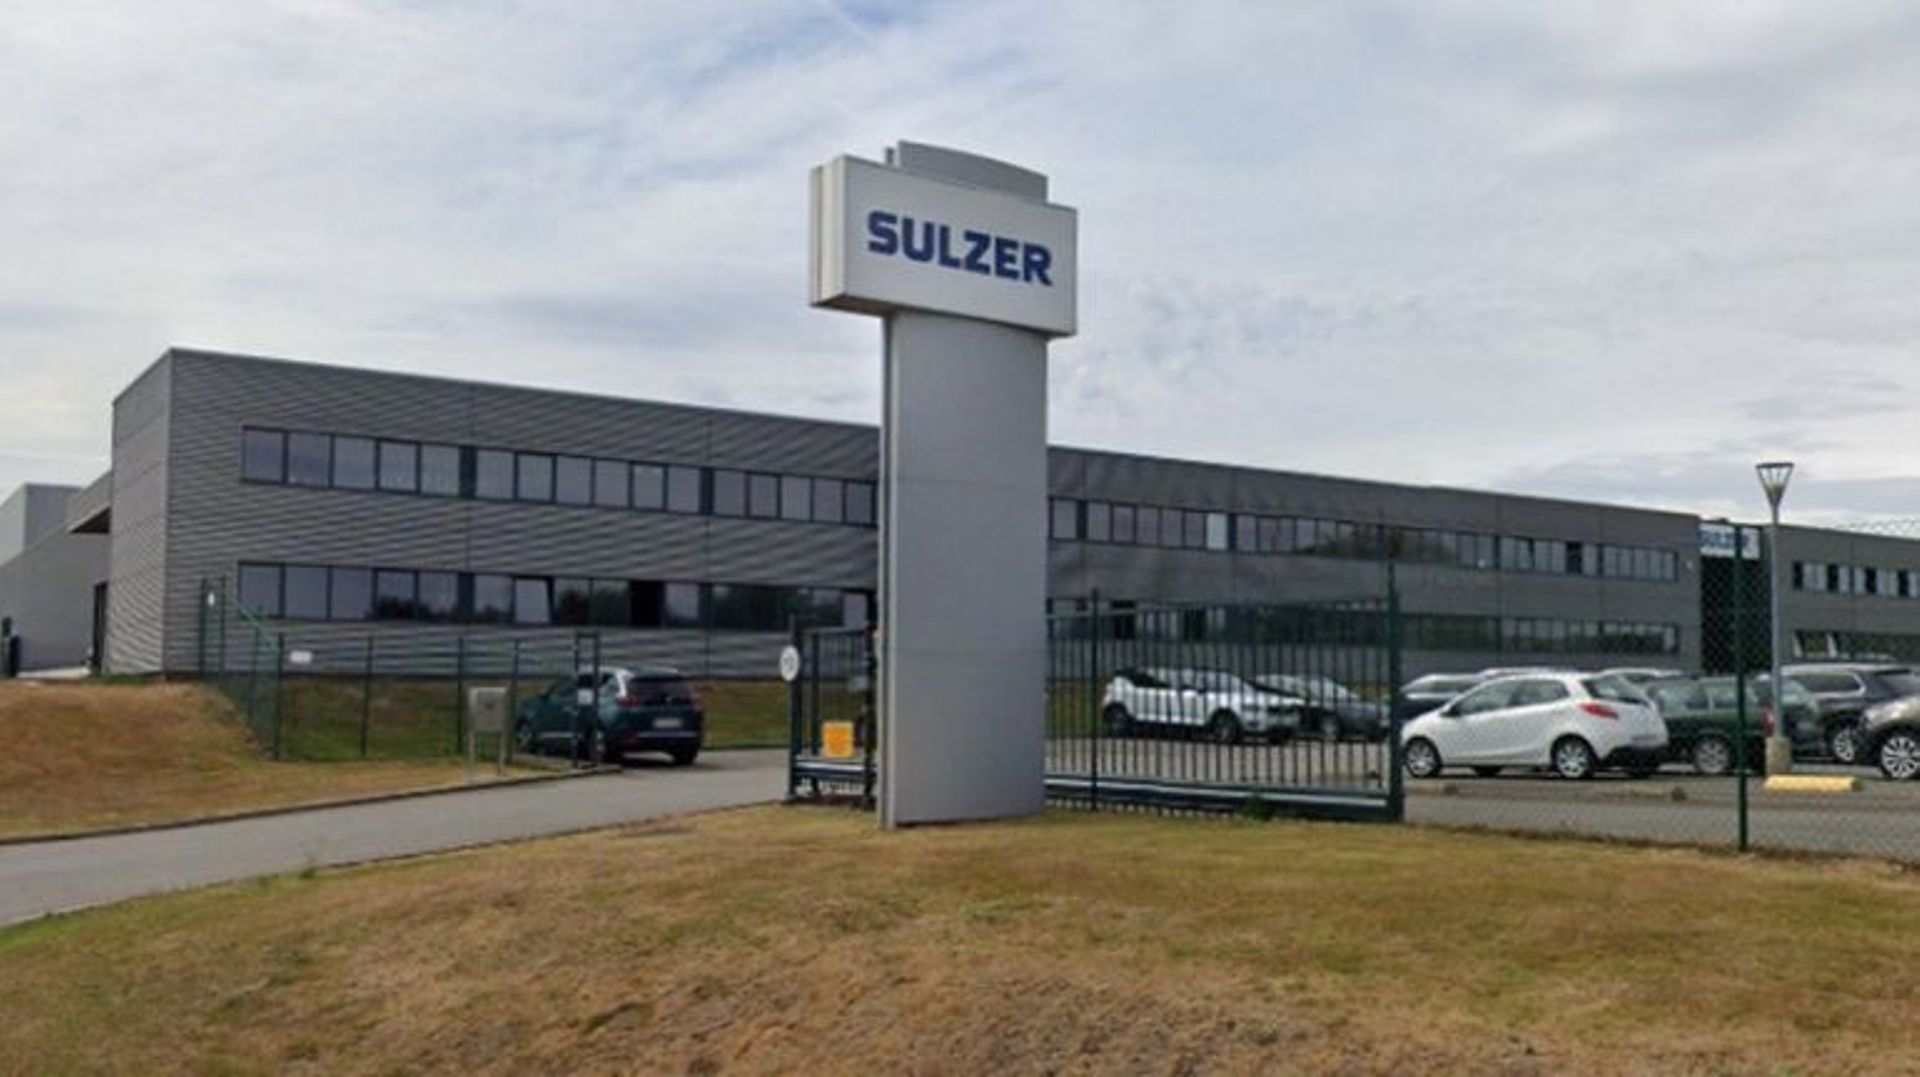 L'espoir s'amenuise pour les salariés de Sulzer. 155 emplois semblent bel et bien menacés. 